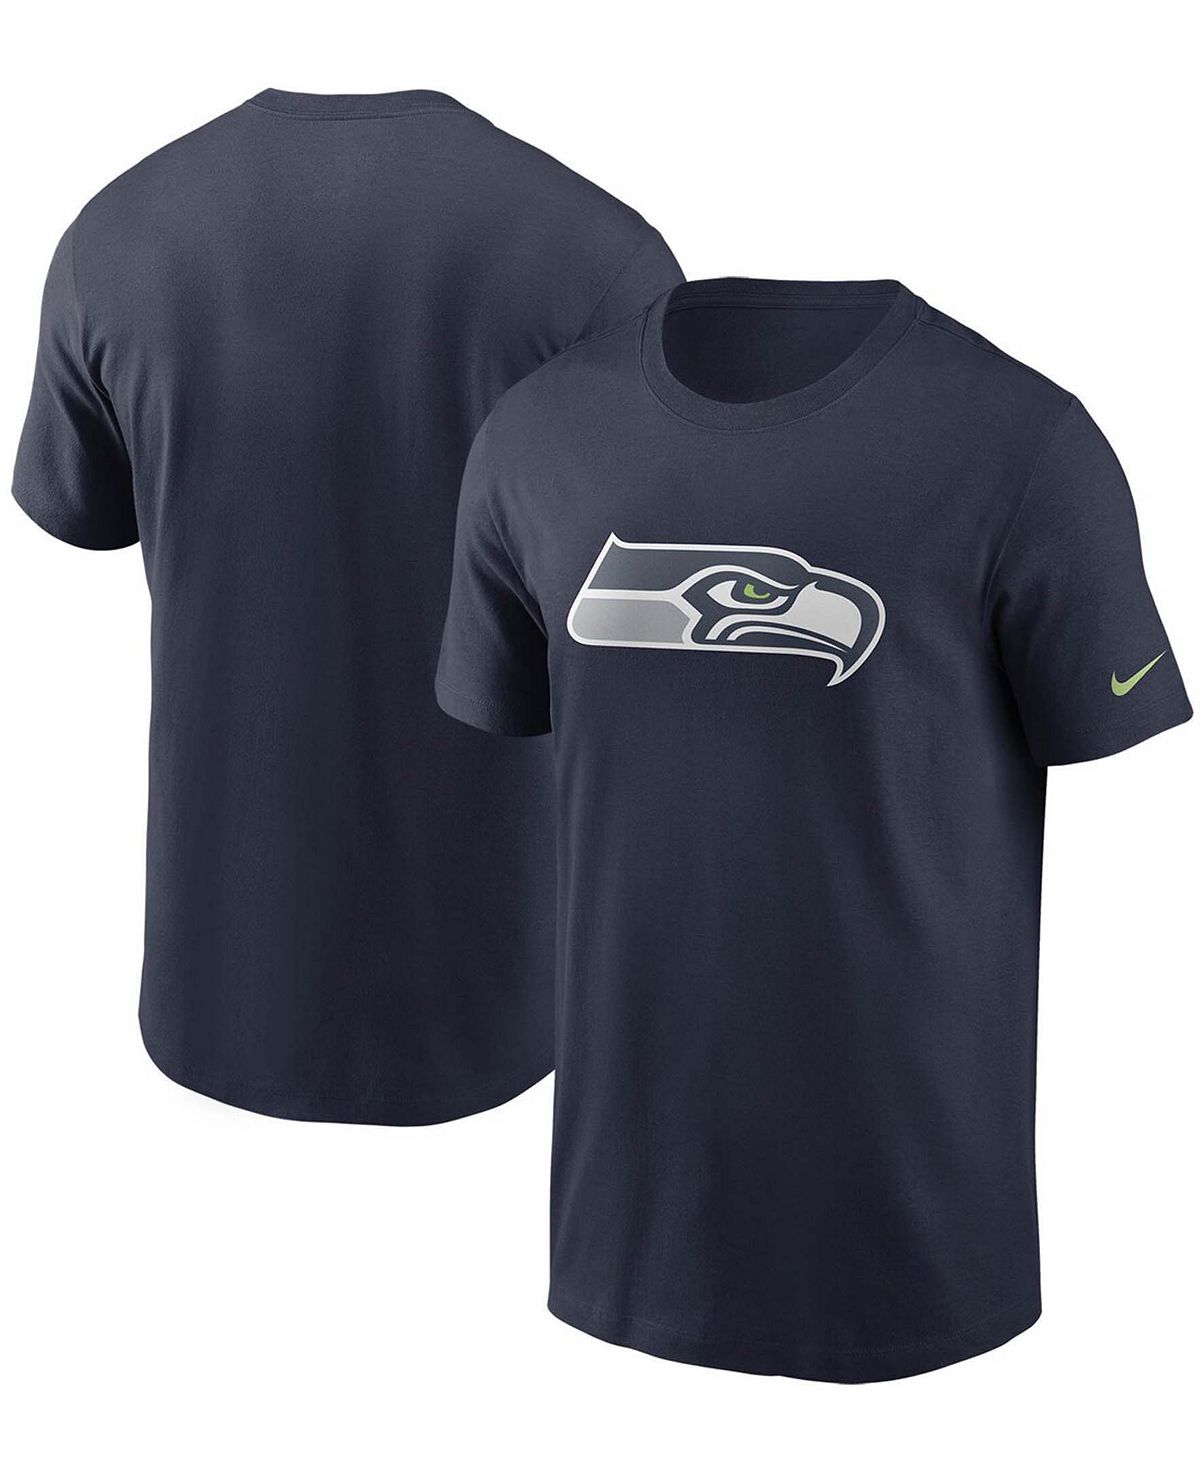 цена Мужская темно-синяя футболка с логотипом Seattle Seahawks College Nike